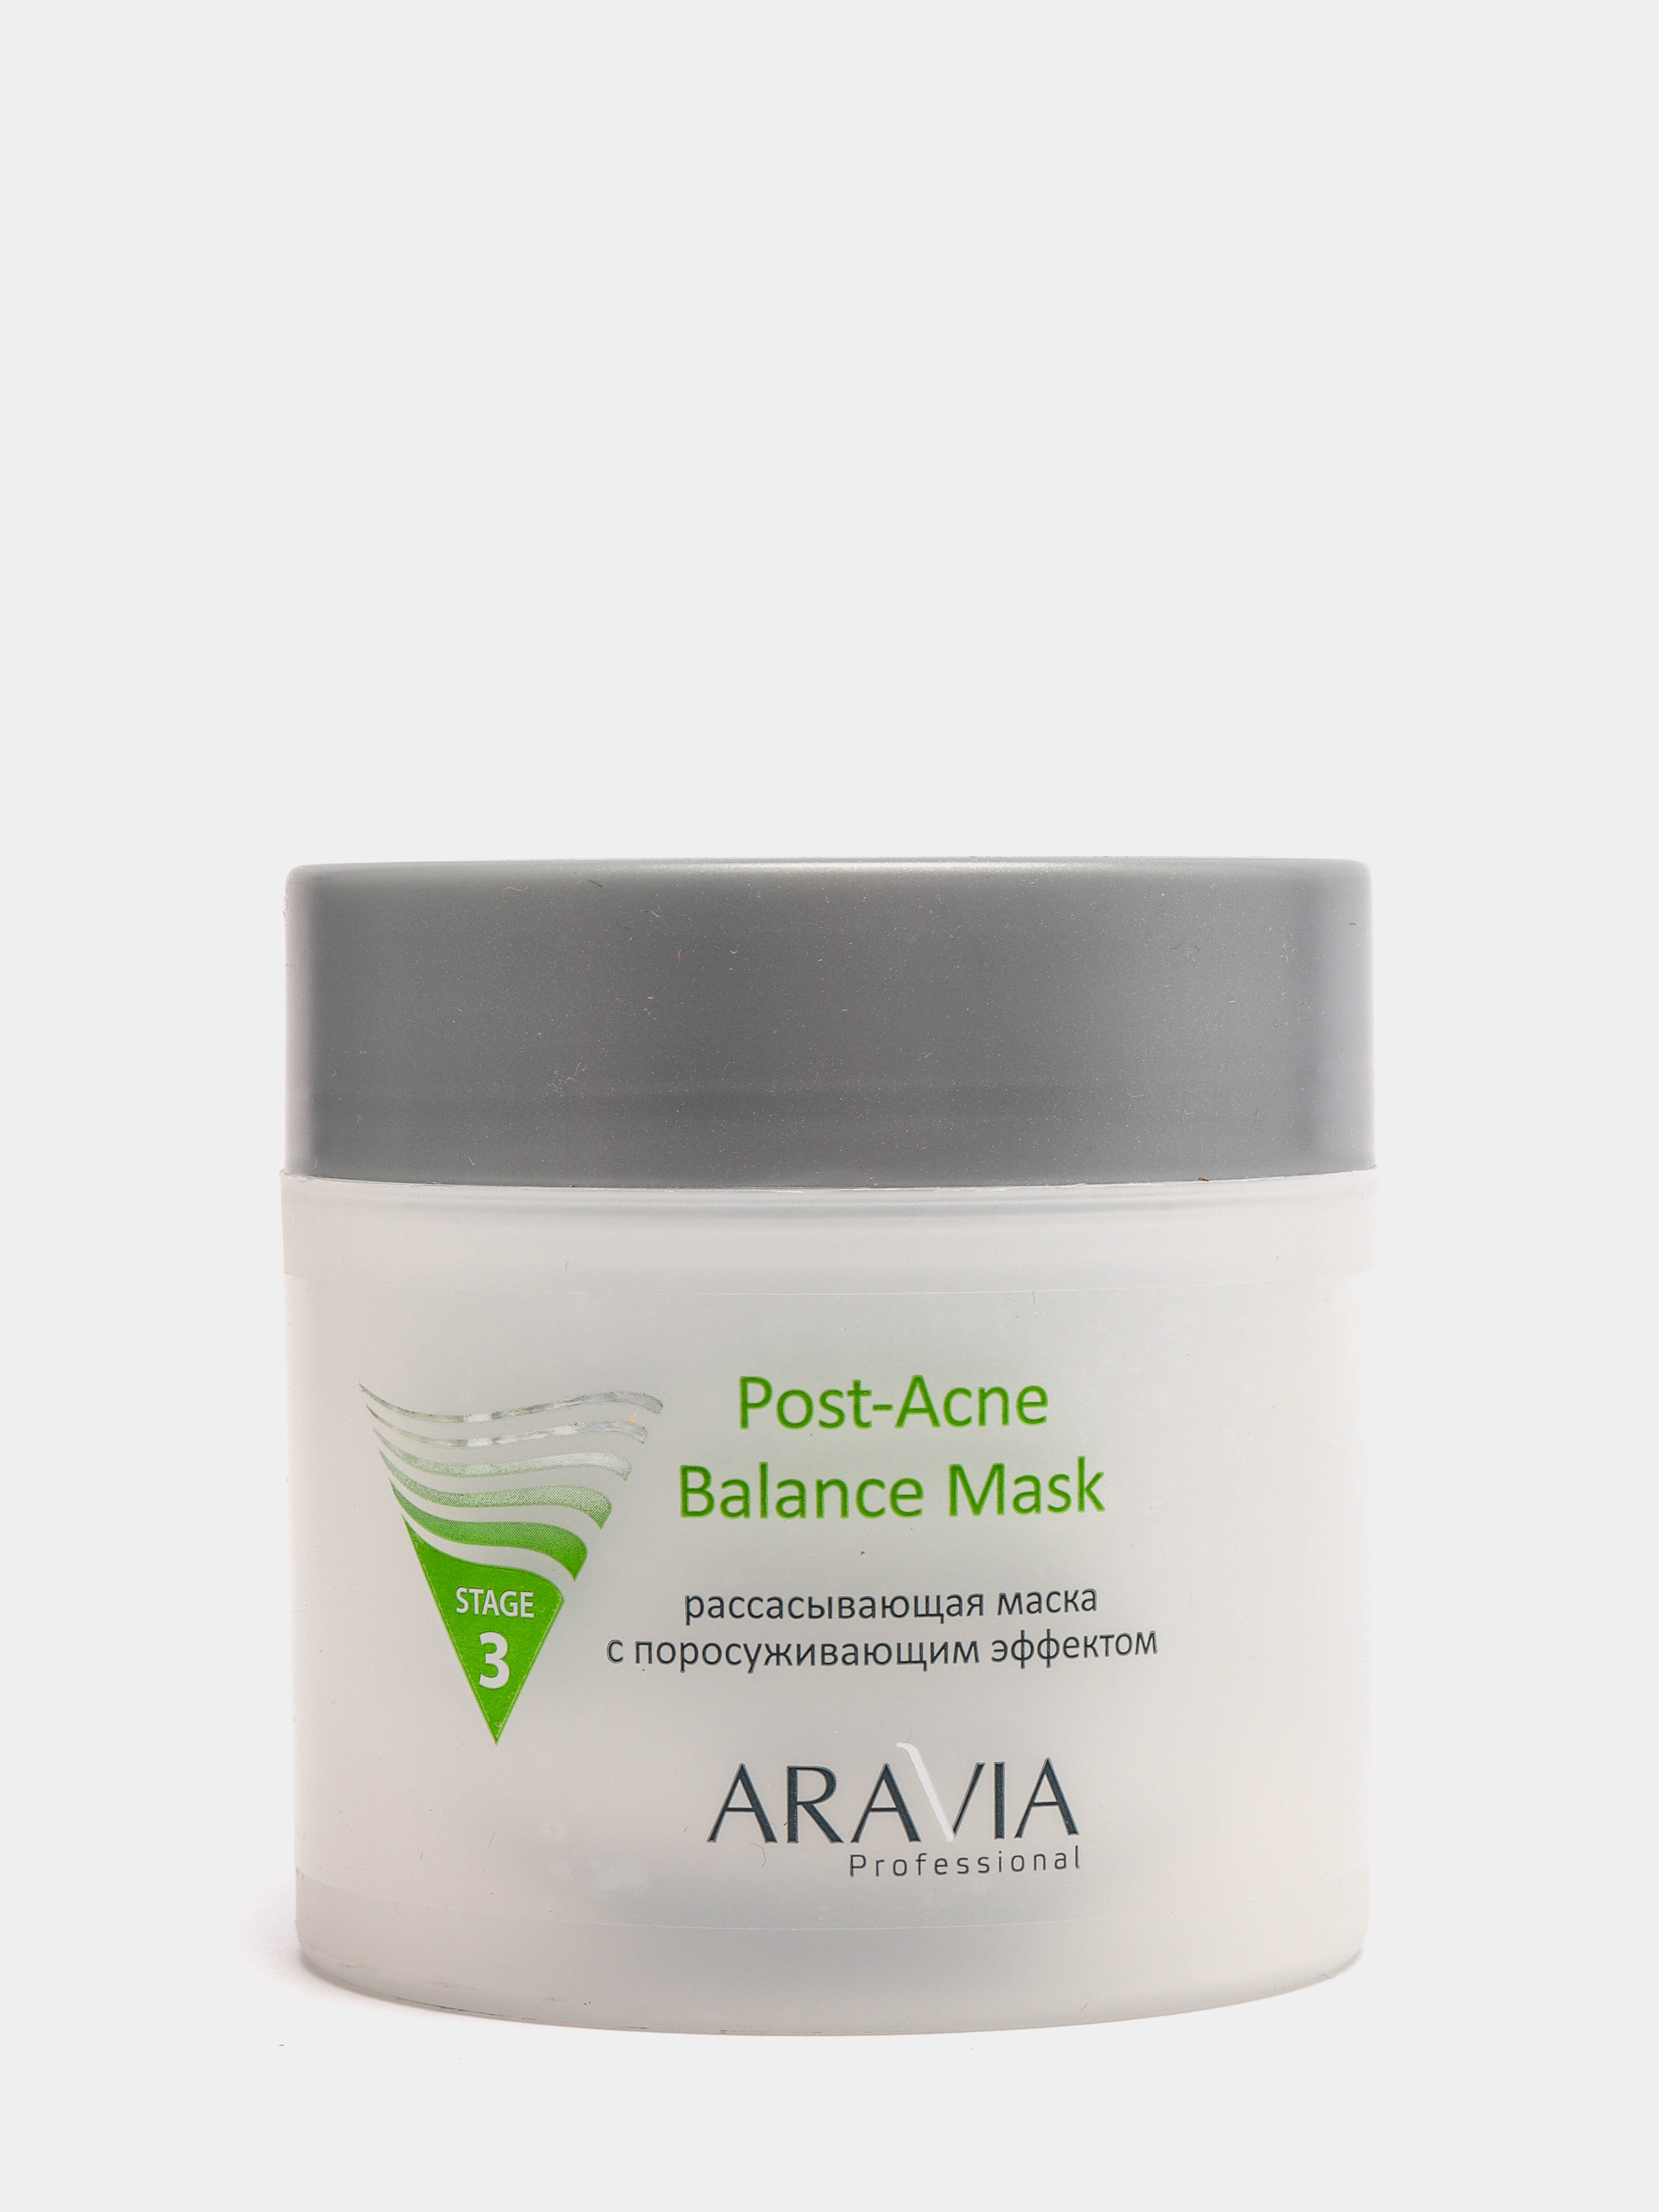 Aravia Post acne Balance Mask. Аравия рассасывающая маска с поросуживающим эффектом. Post acne маска. Маска для лица с ментолом Аравия. Аравия рассасывающая маска отзывы